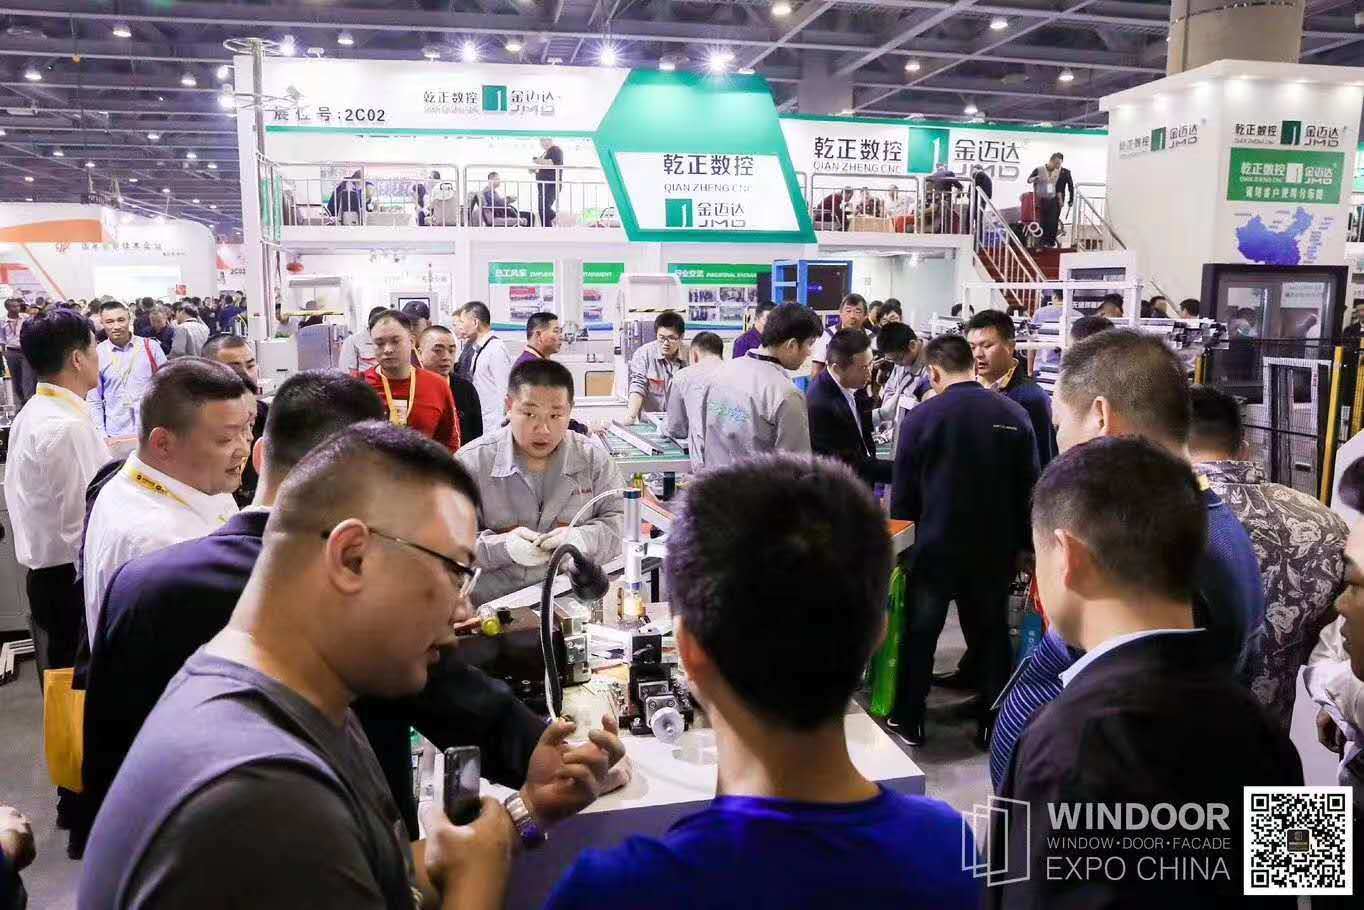 Windoor Facade EXPO China 2019 Guangzhou